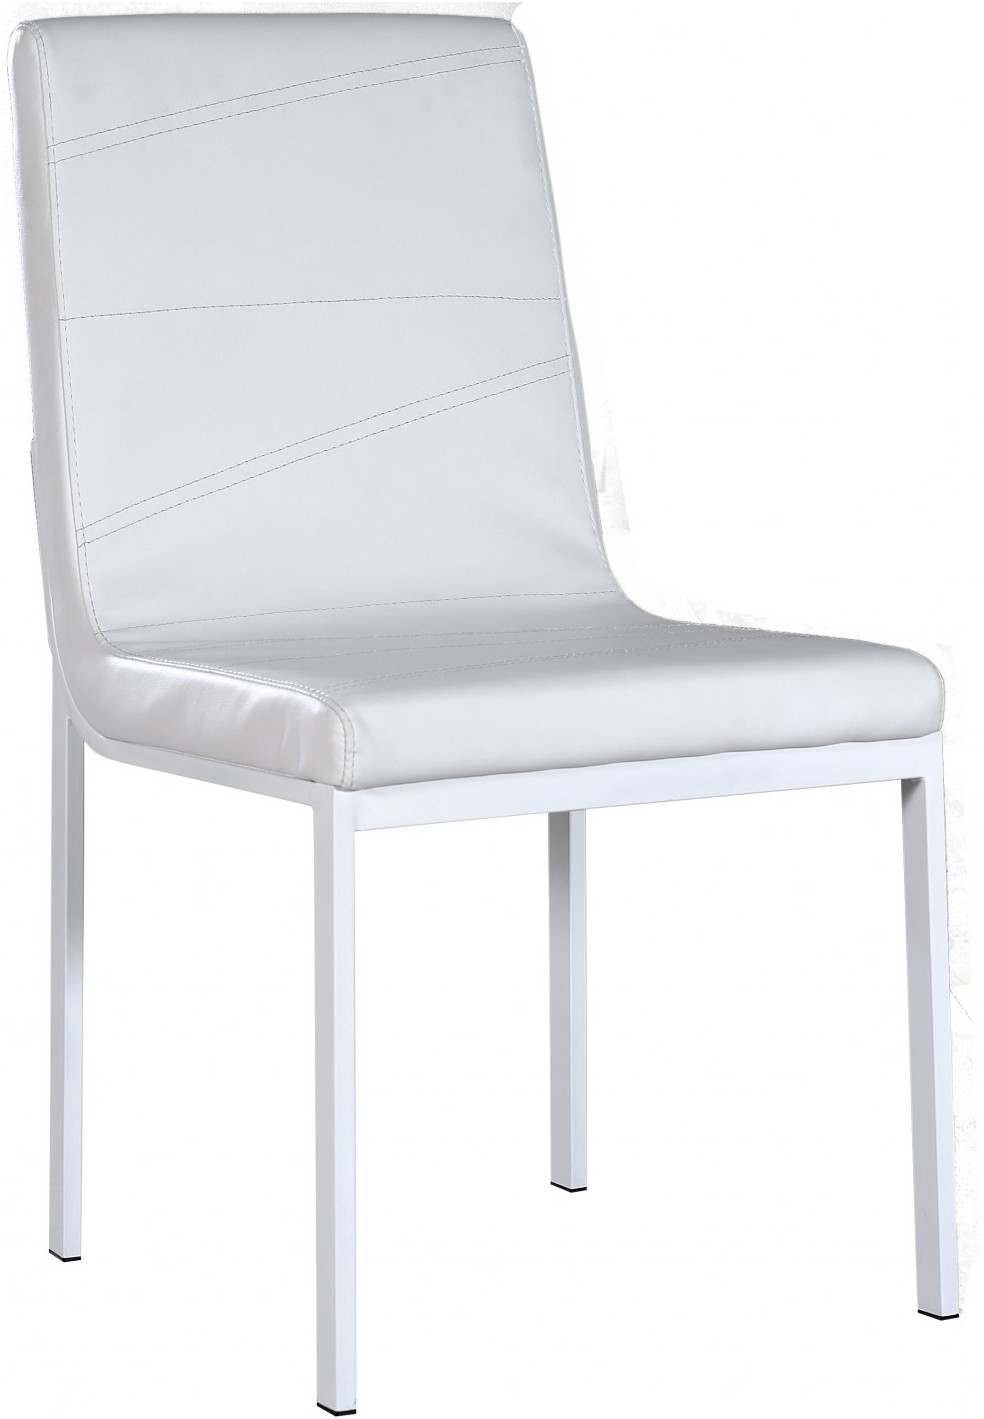 Chaise moderne blanche Sona  Lot de 2  LesTendances.fr